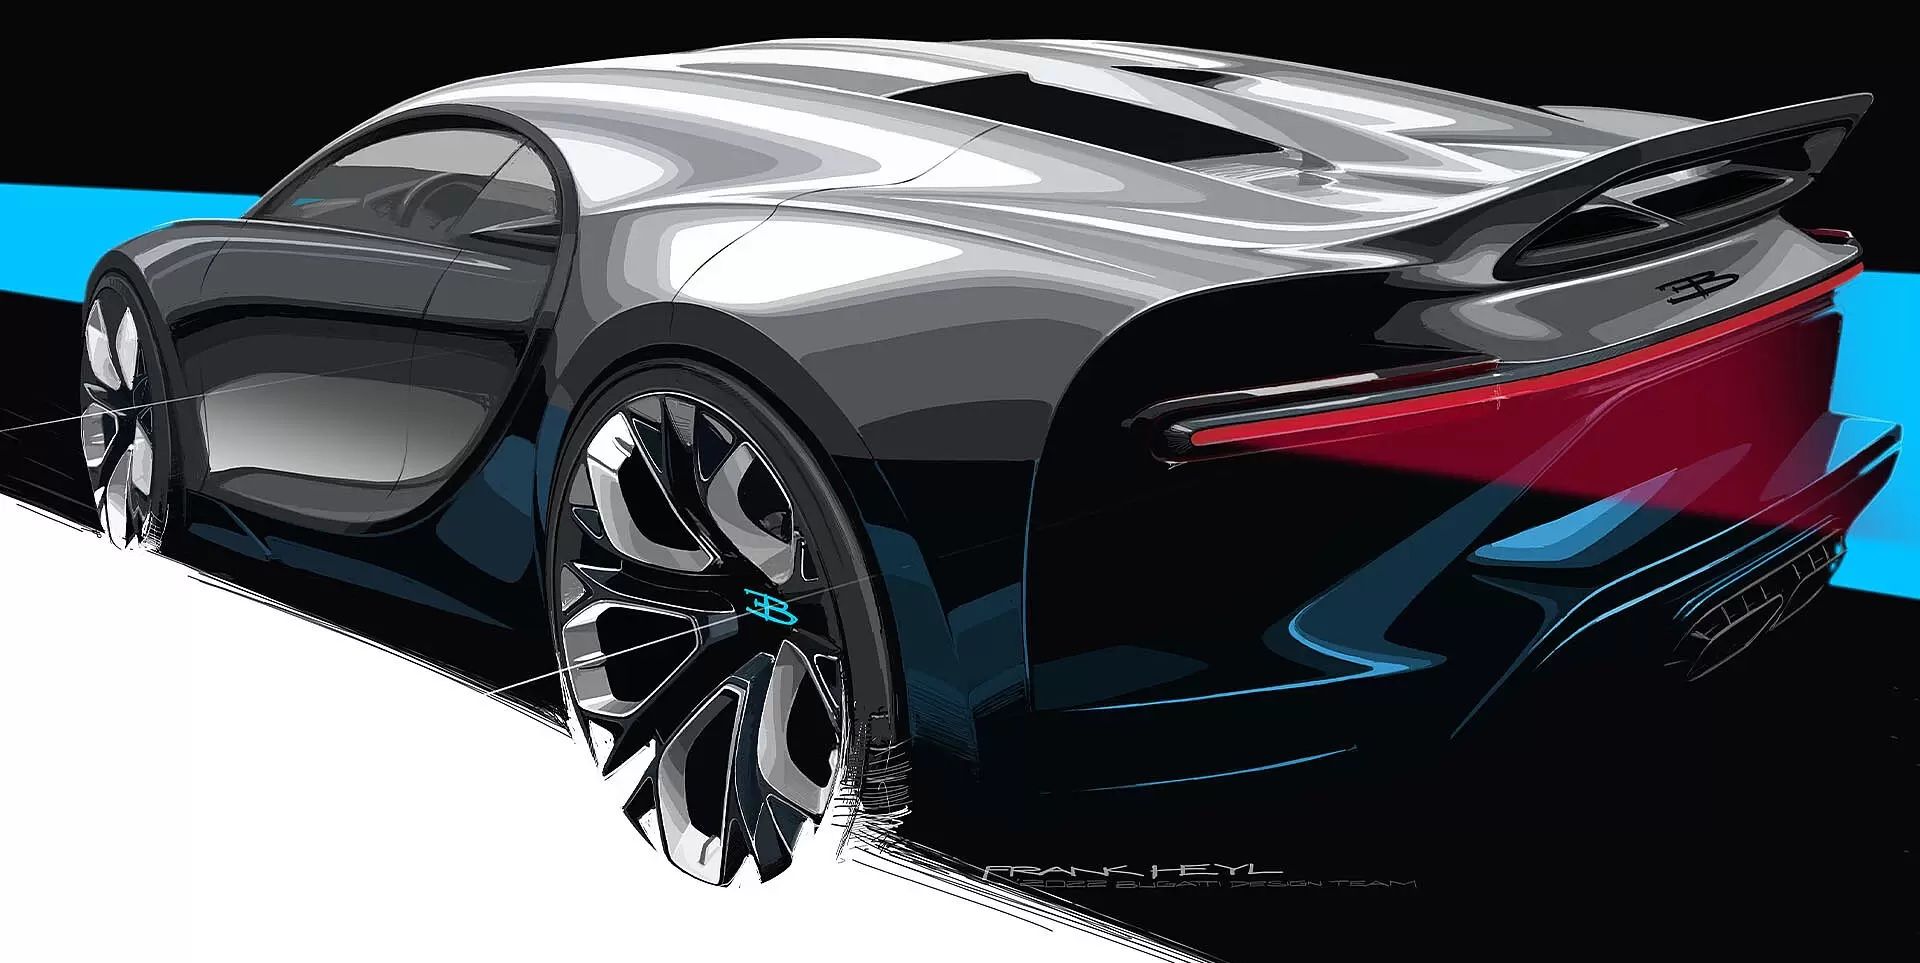 Bugatti Chiron Successor Will Debut Next Year